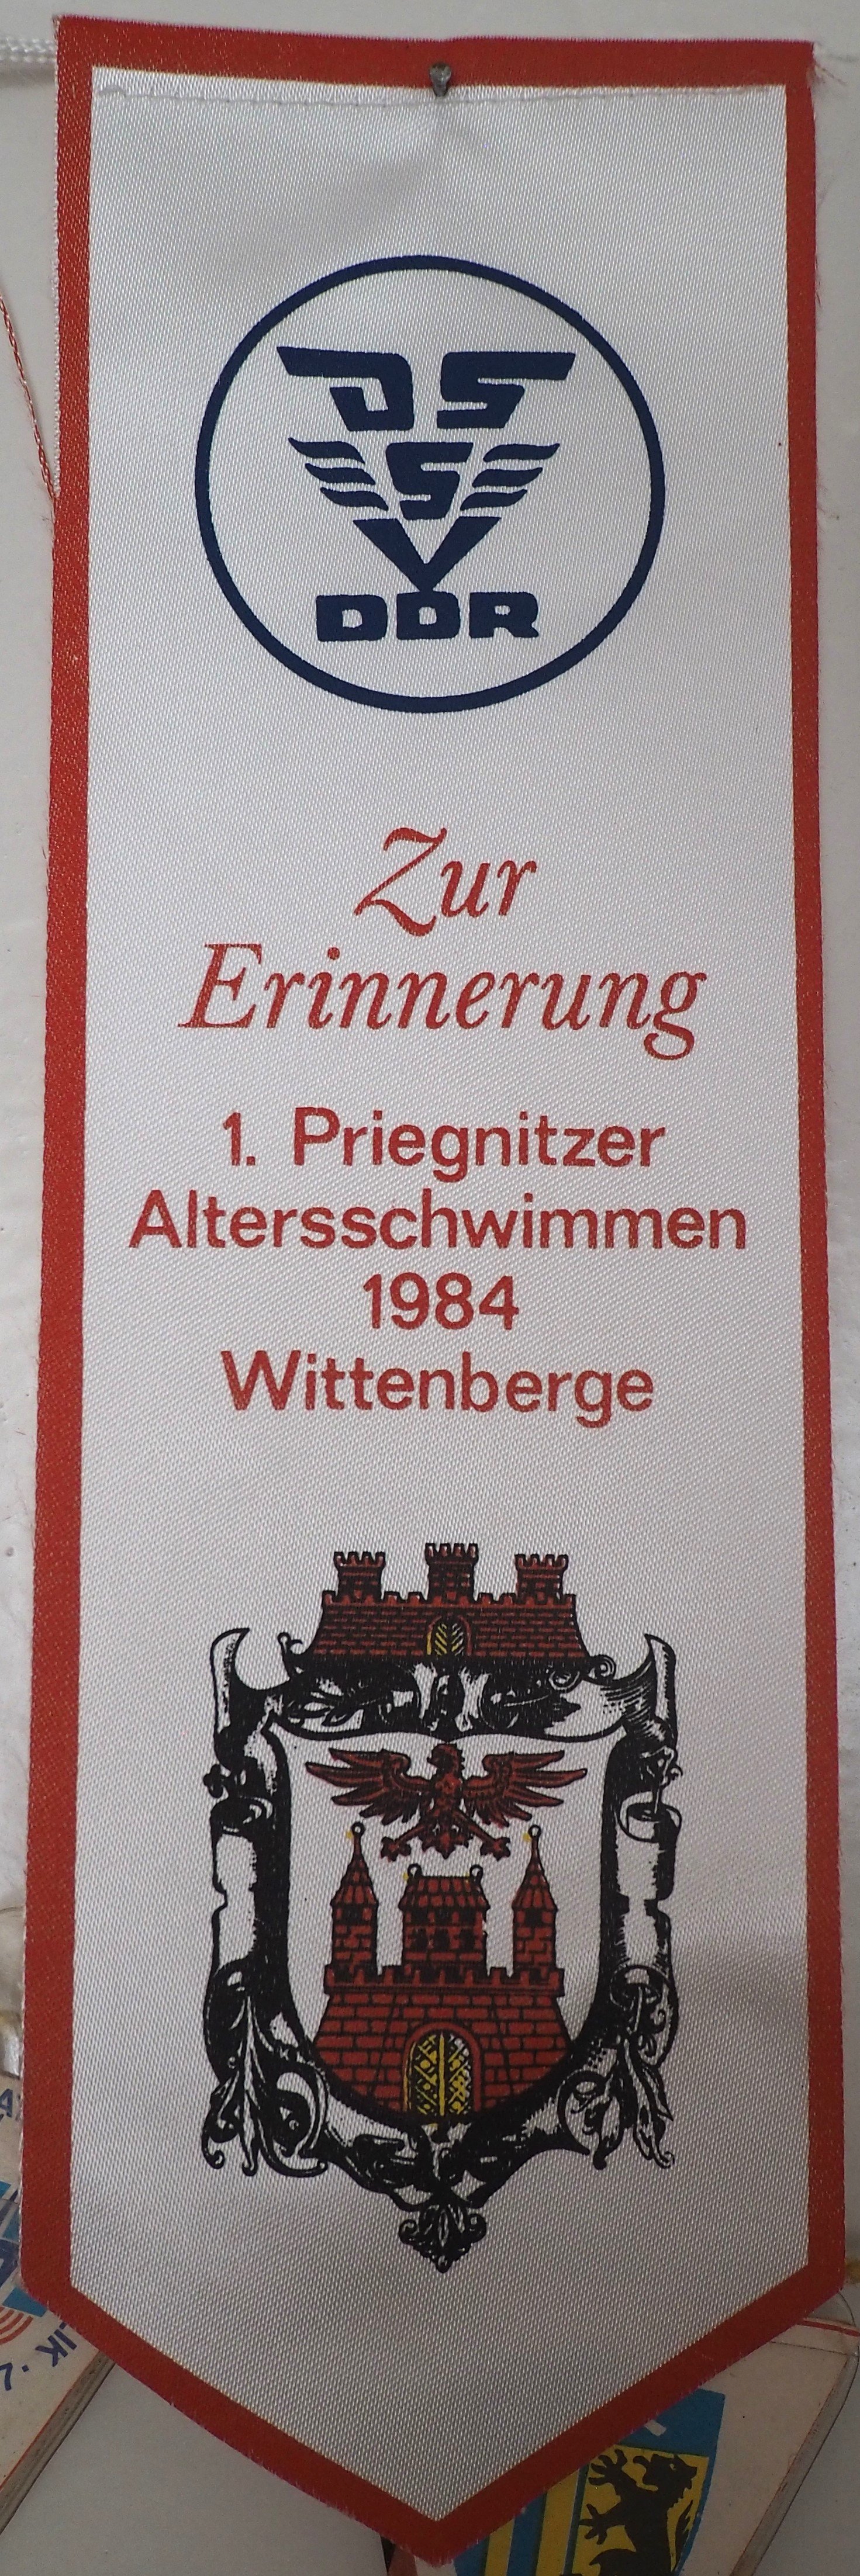 Wimpel: 1. Priegnitzer [sic] Altersschwimmen 1984 in Wittenberge (DDR Geschichtsmuseum im Dokumentationszentrum Perleberg CC BY-SA)